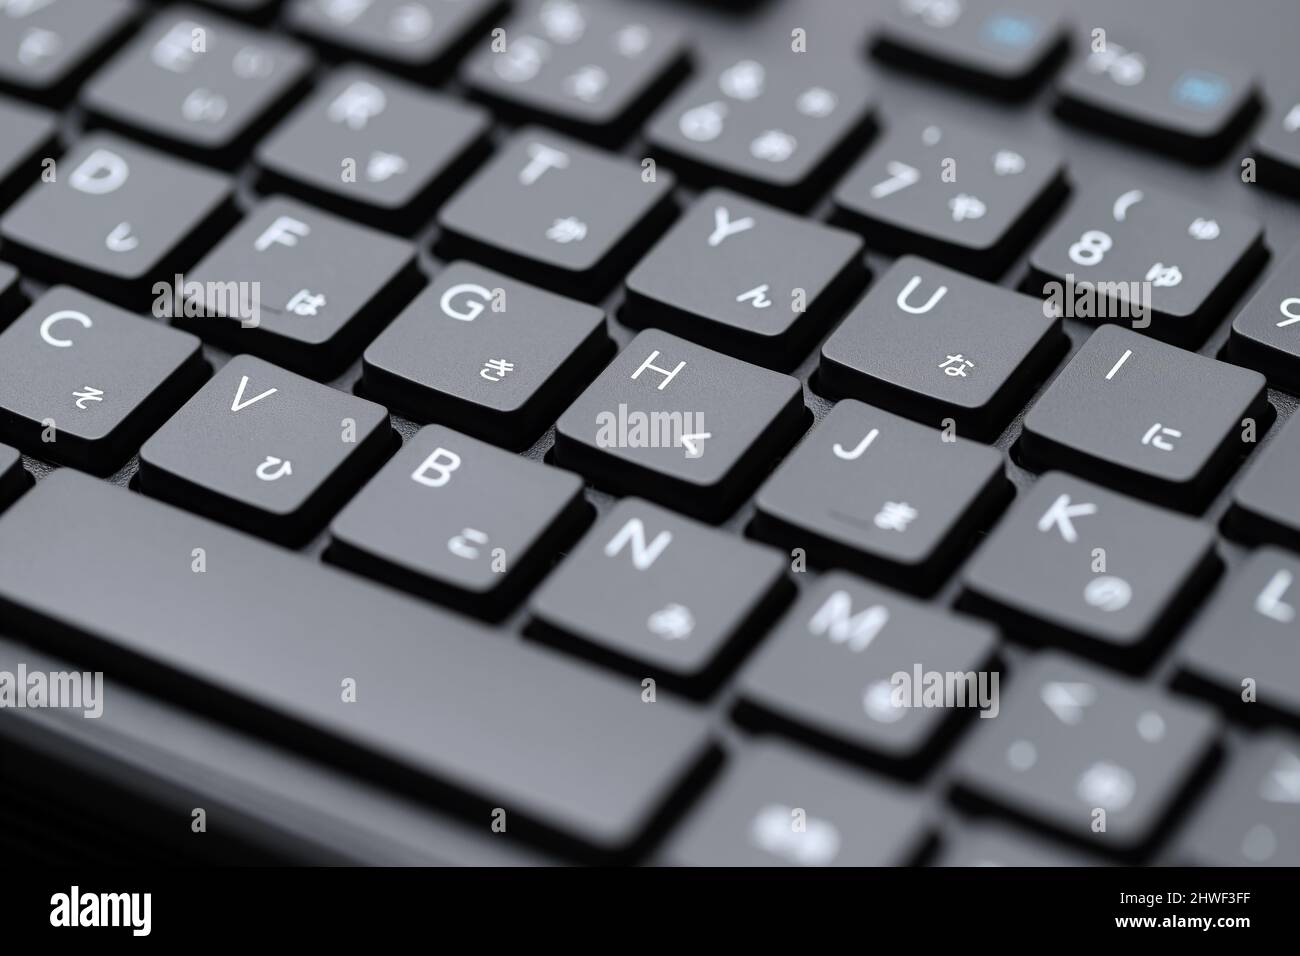 Close up of computer keyboard. Alphabetics and Japanese hiragana typing keyboard. Stock Photo